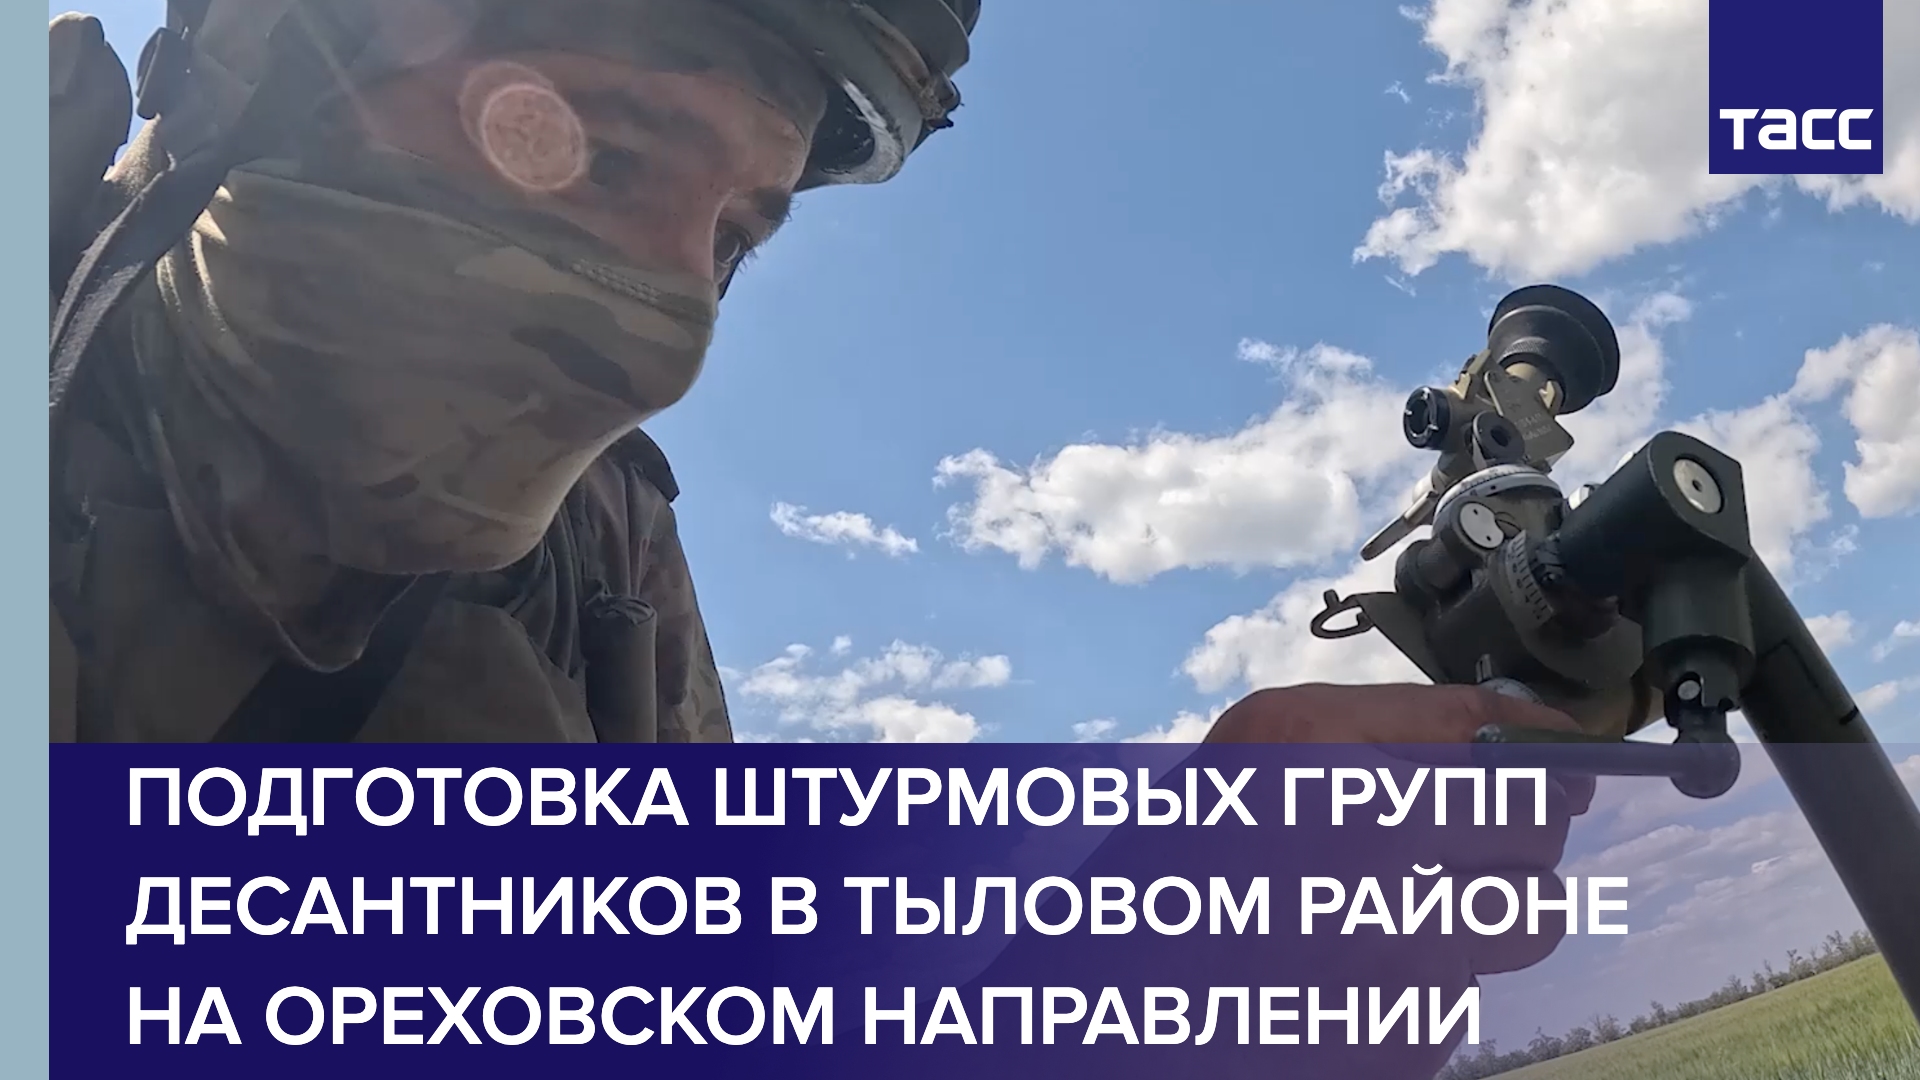 Боевая подготовка штурмовых групп десантников в тыловом районе на Ореховском направлении